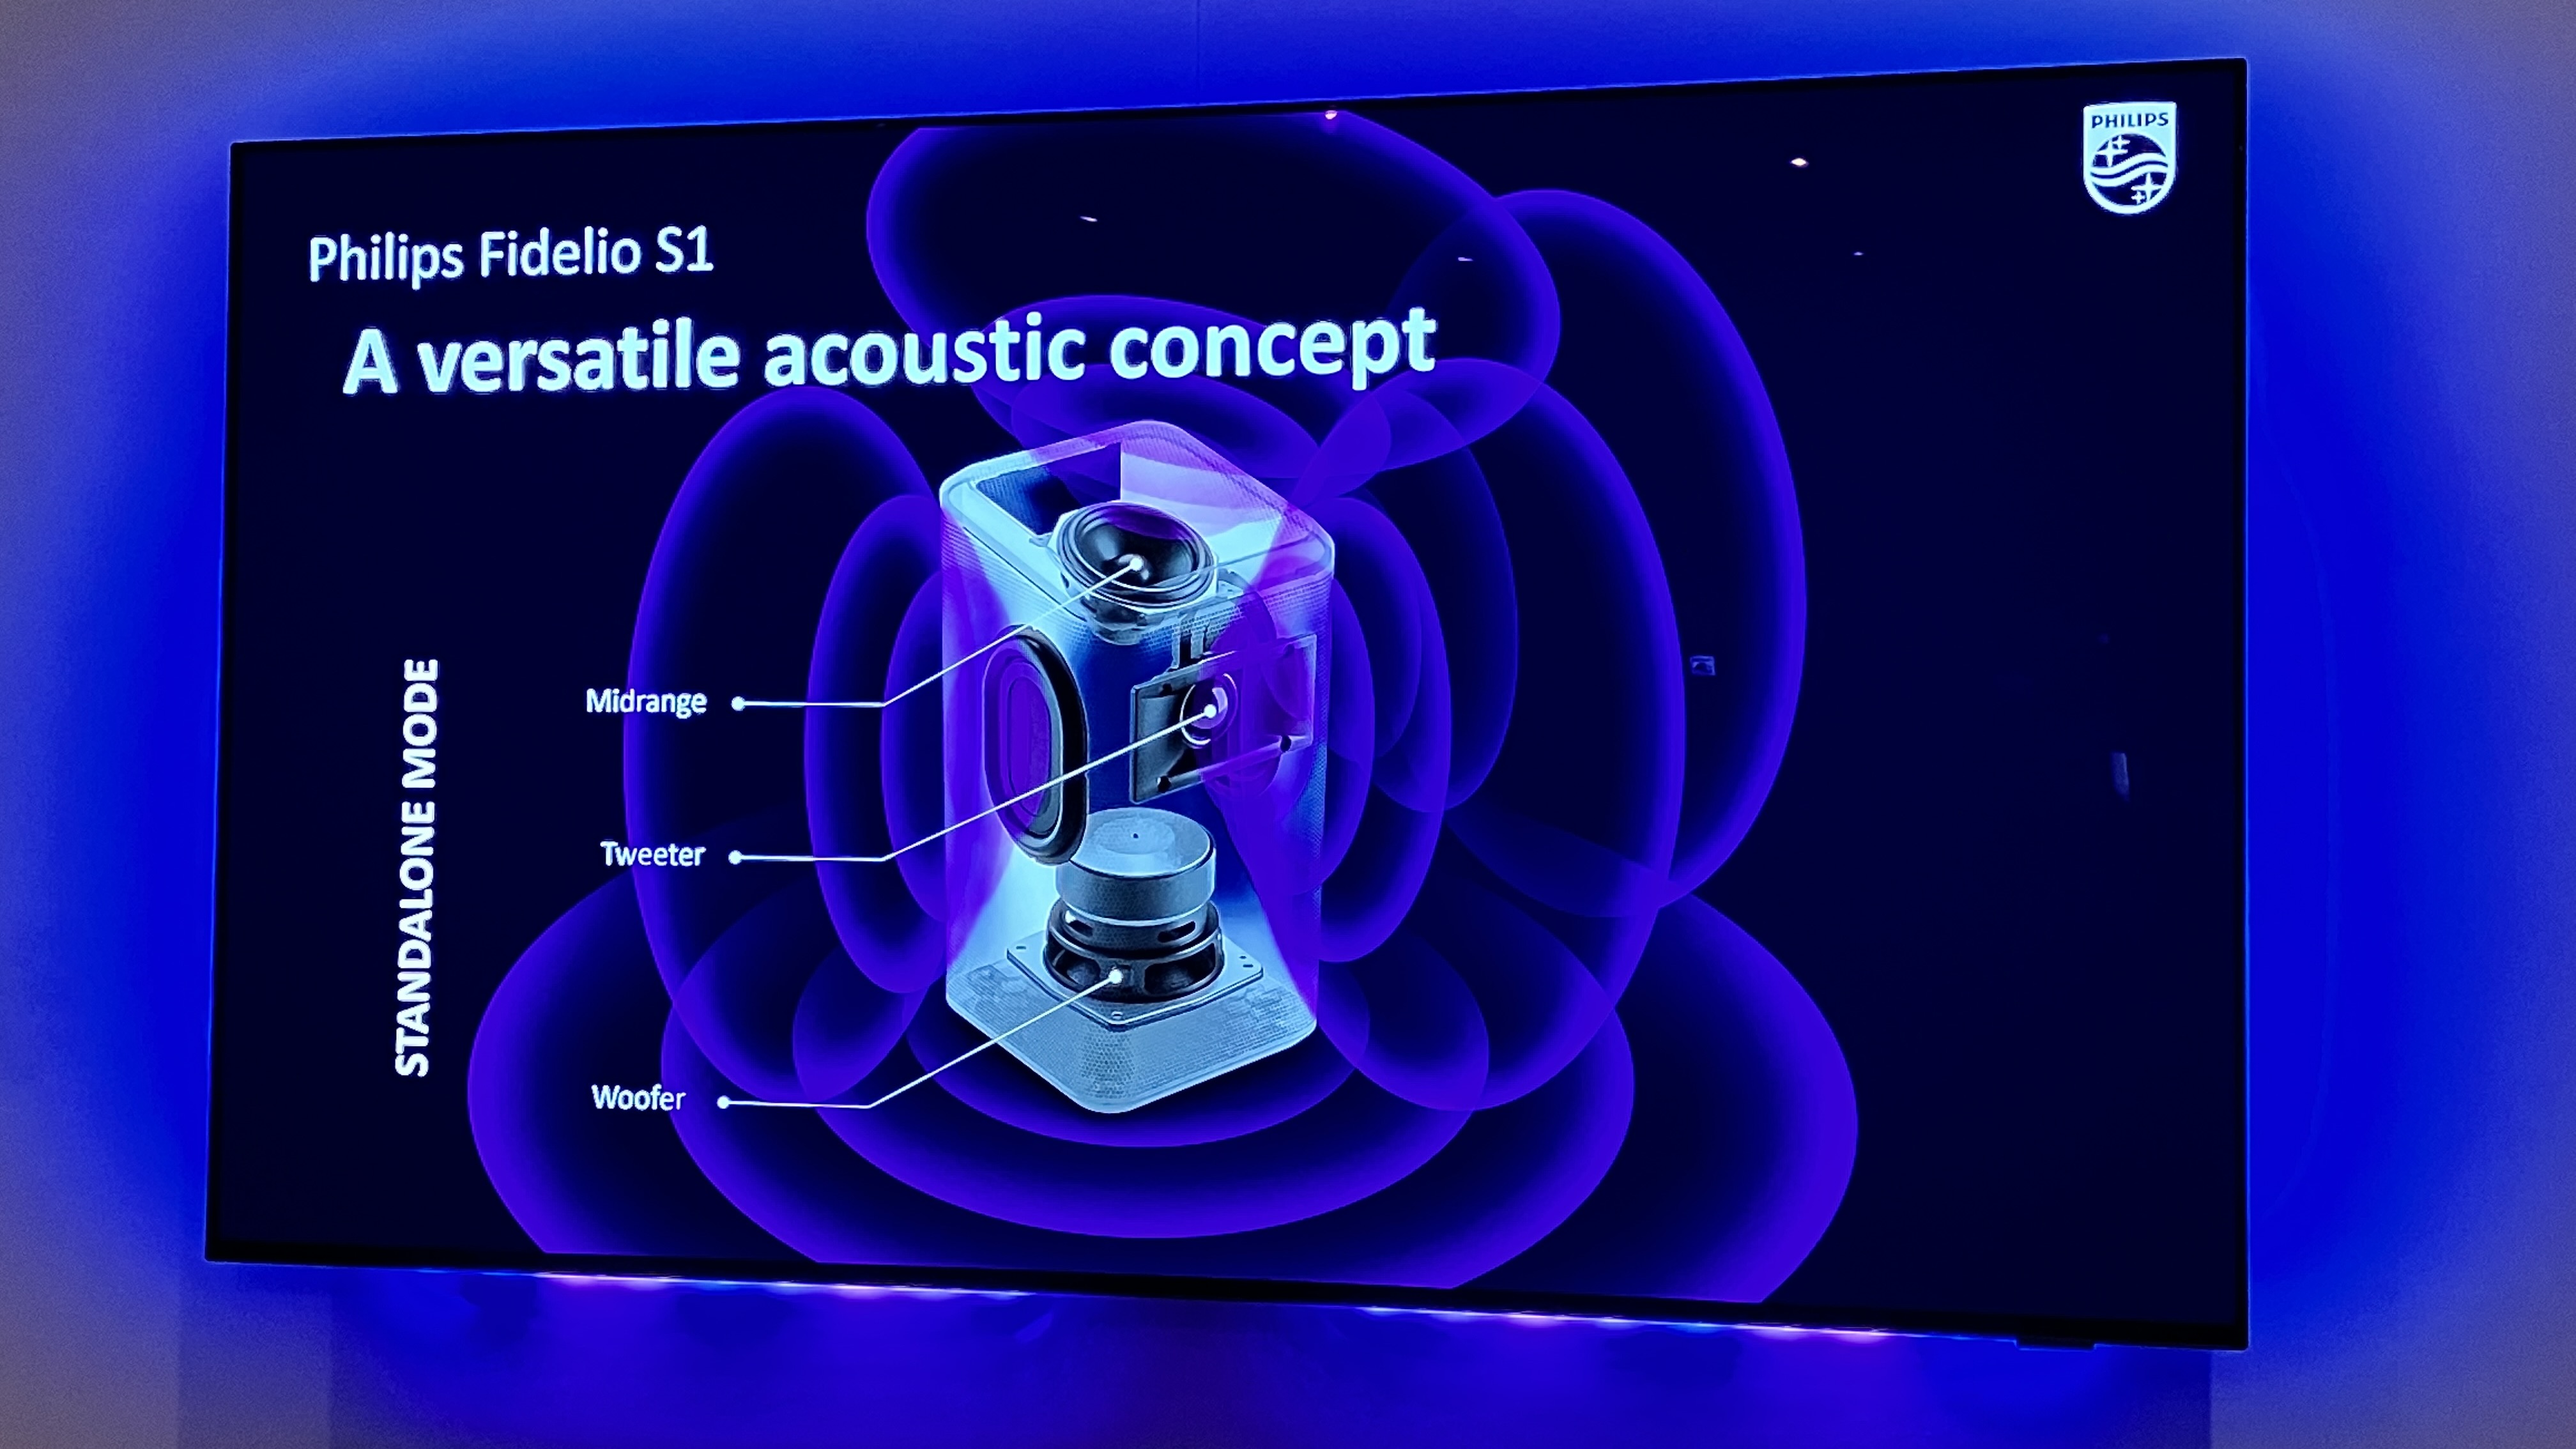 Le novità Philips Sound a IFA 2022: in arrivo nuove cuffie, soundbar e speaker